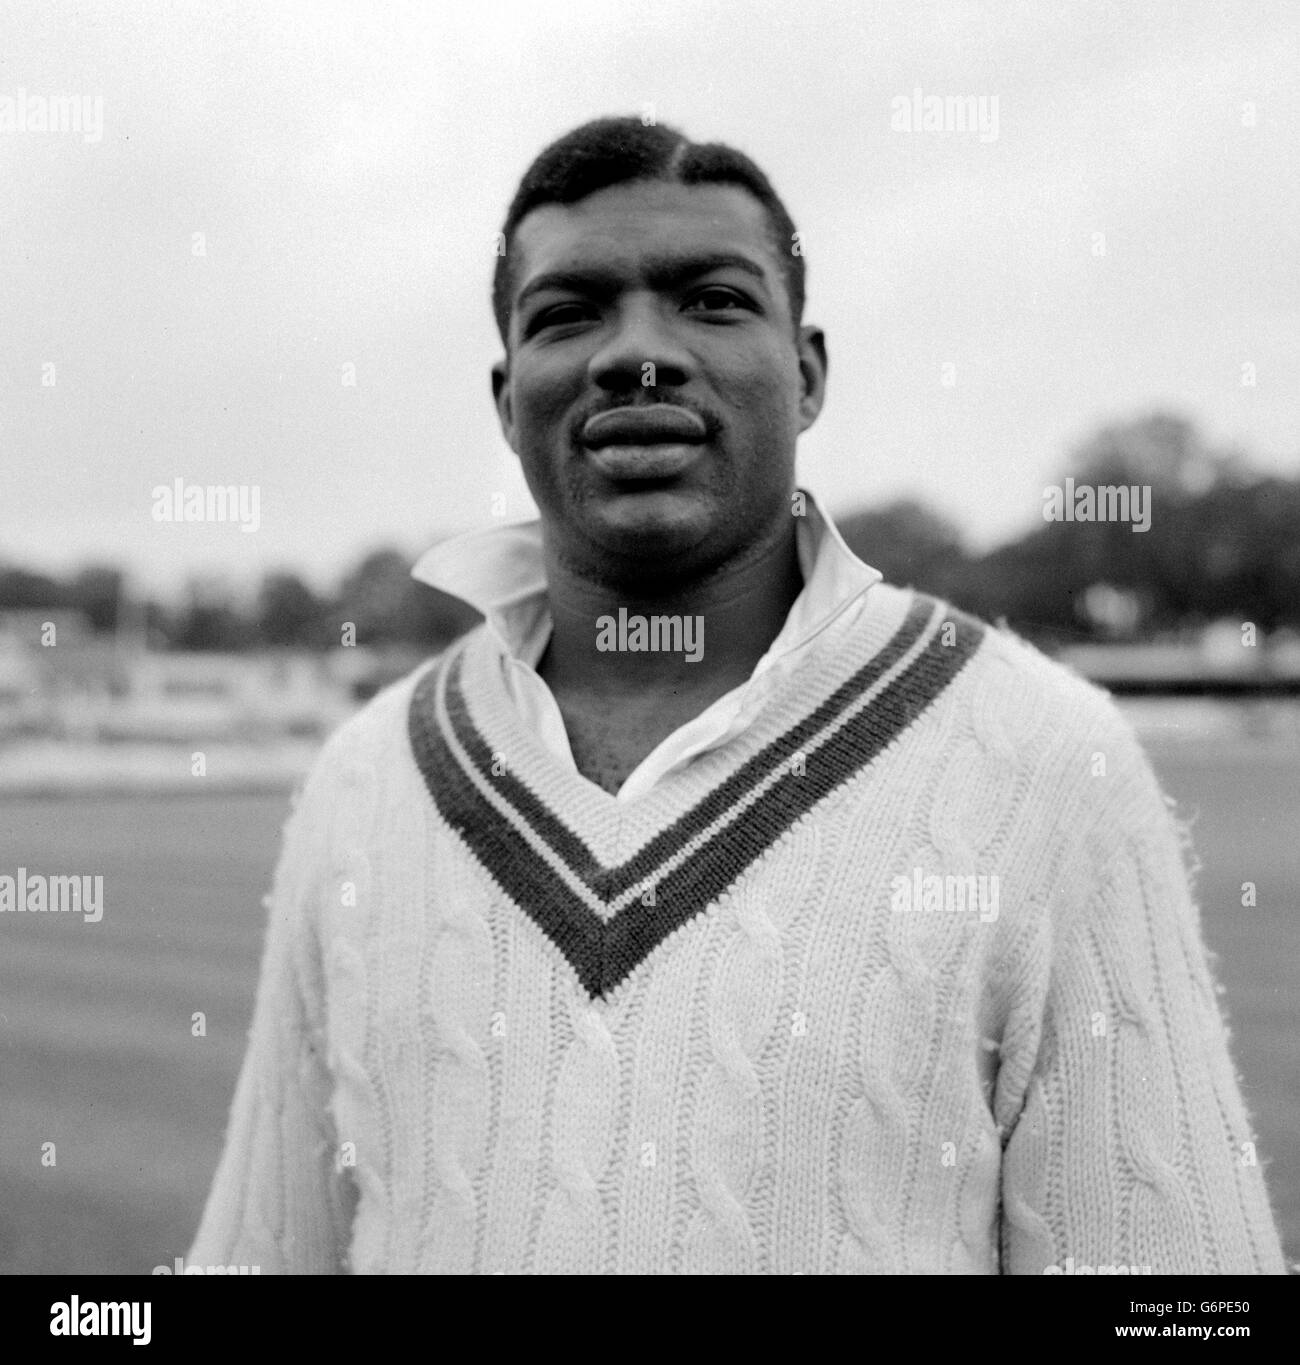 Charles Griffith, le plus grand homme de l'équipe de cricket des Indes occidentales à visiter l'Angleterre cet été, est de 4 pieds. Griffith, de la Barbade, est un lanceur rapide. Banque D'Images